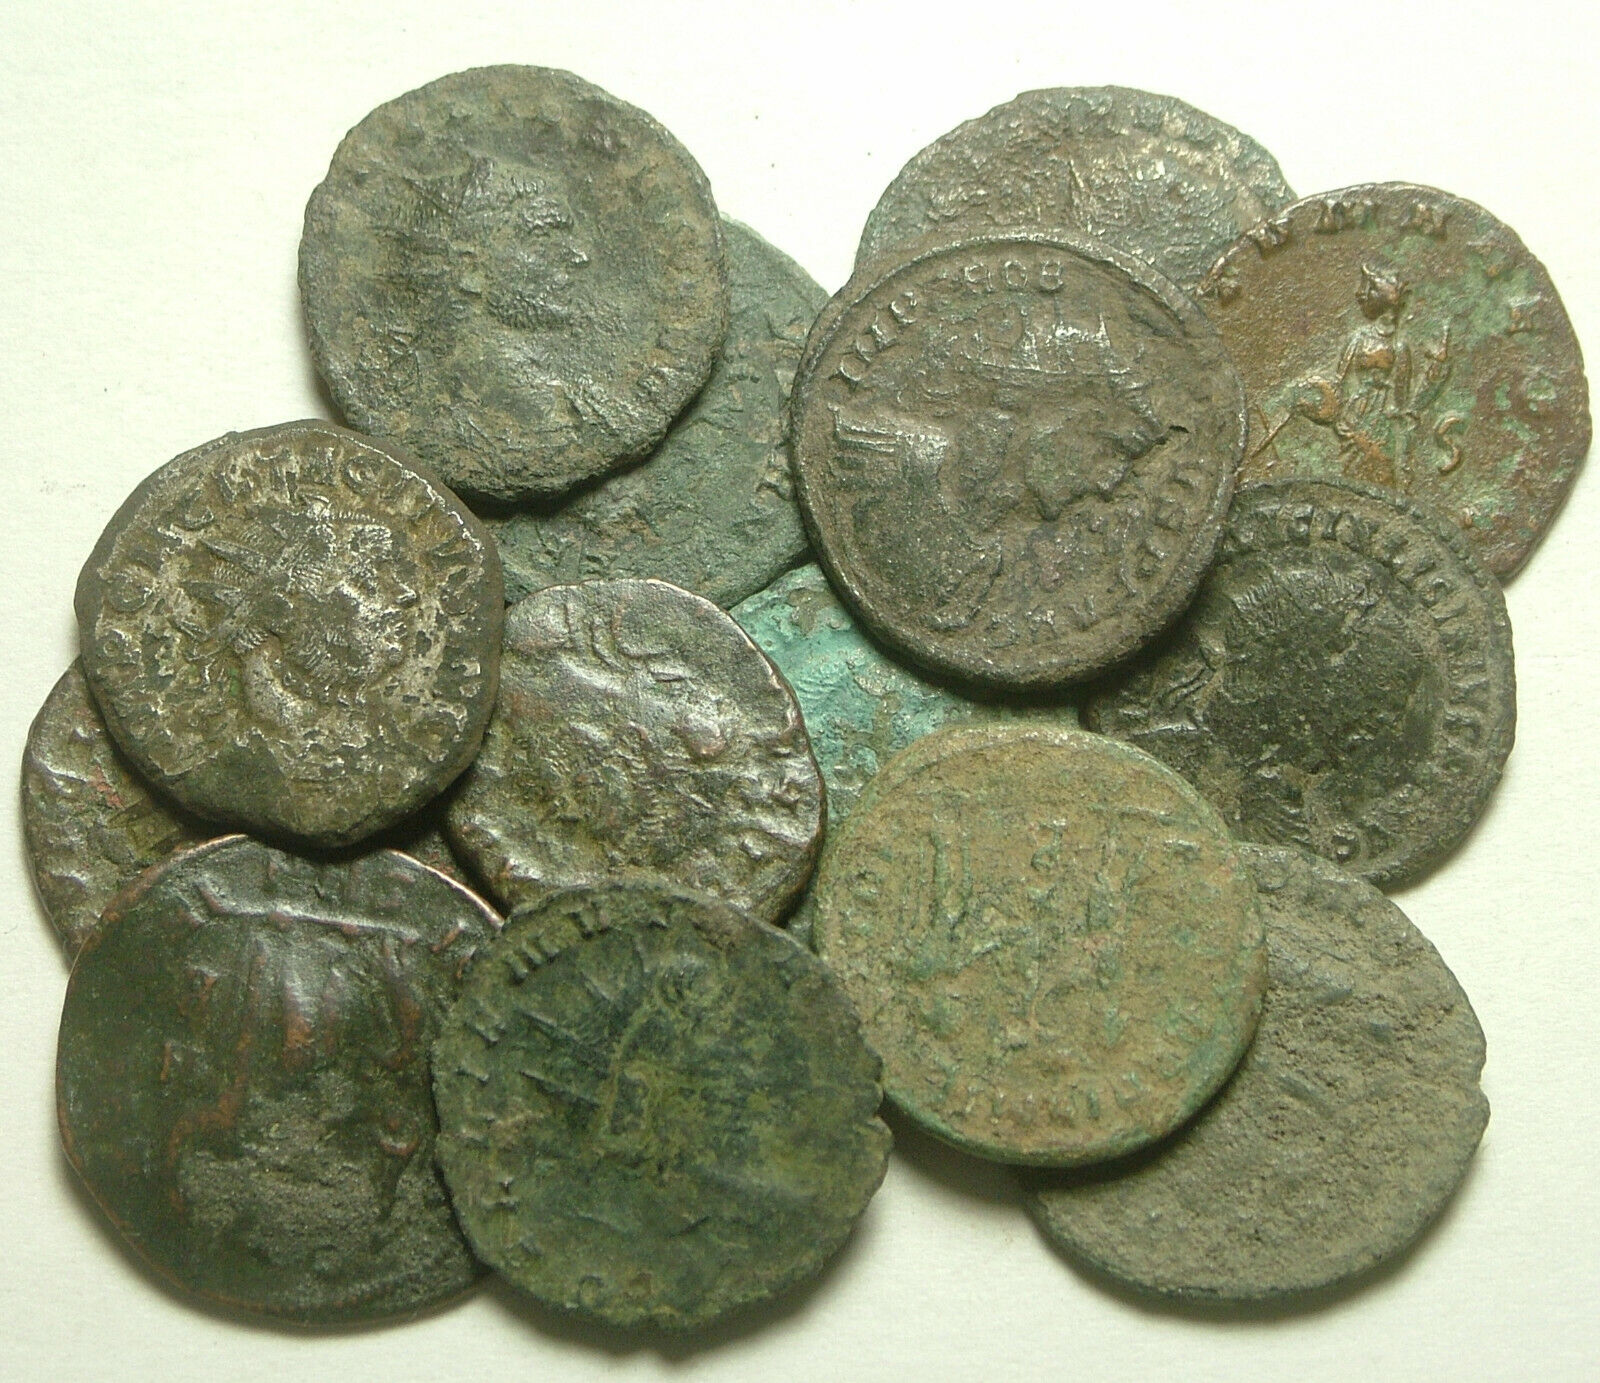 Lot of 3 Rare original Ancient Roman Antoninianus coins Probus Aurelian Claudius Без бренда - фотография #10